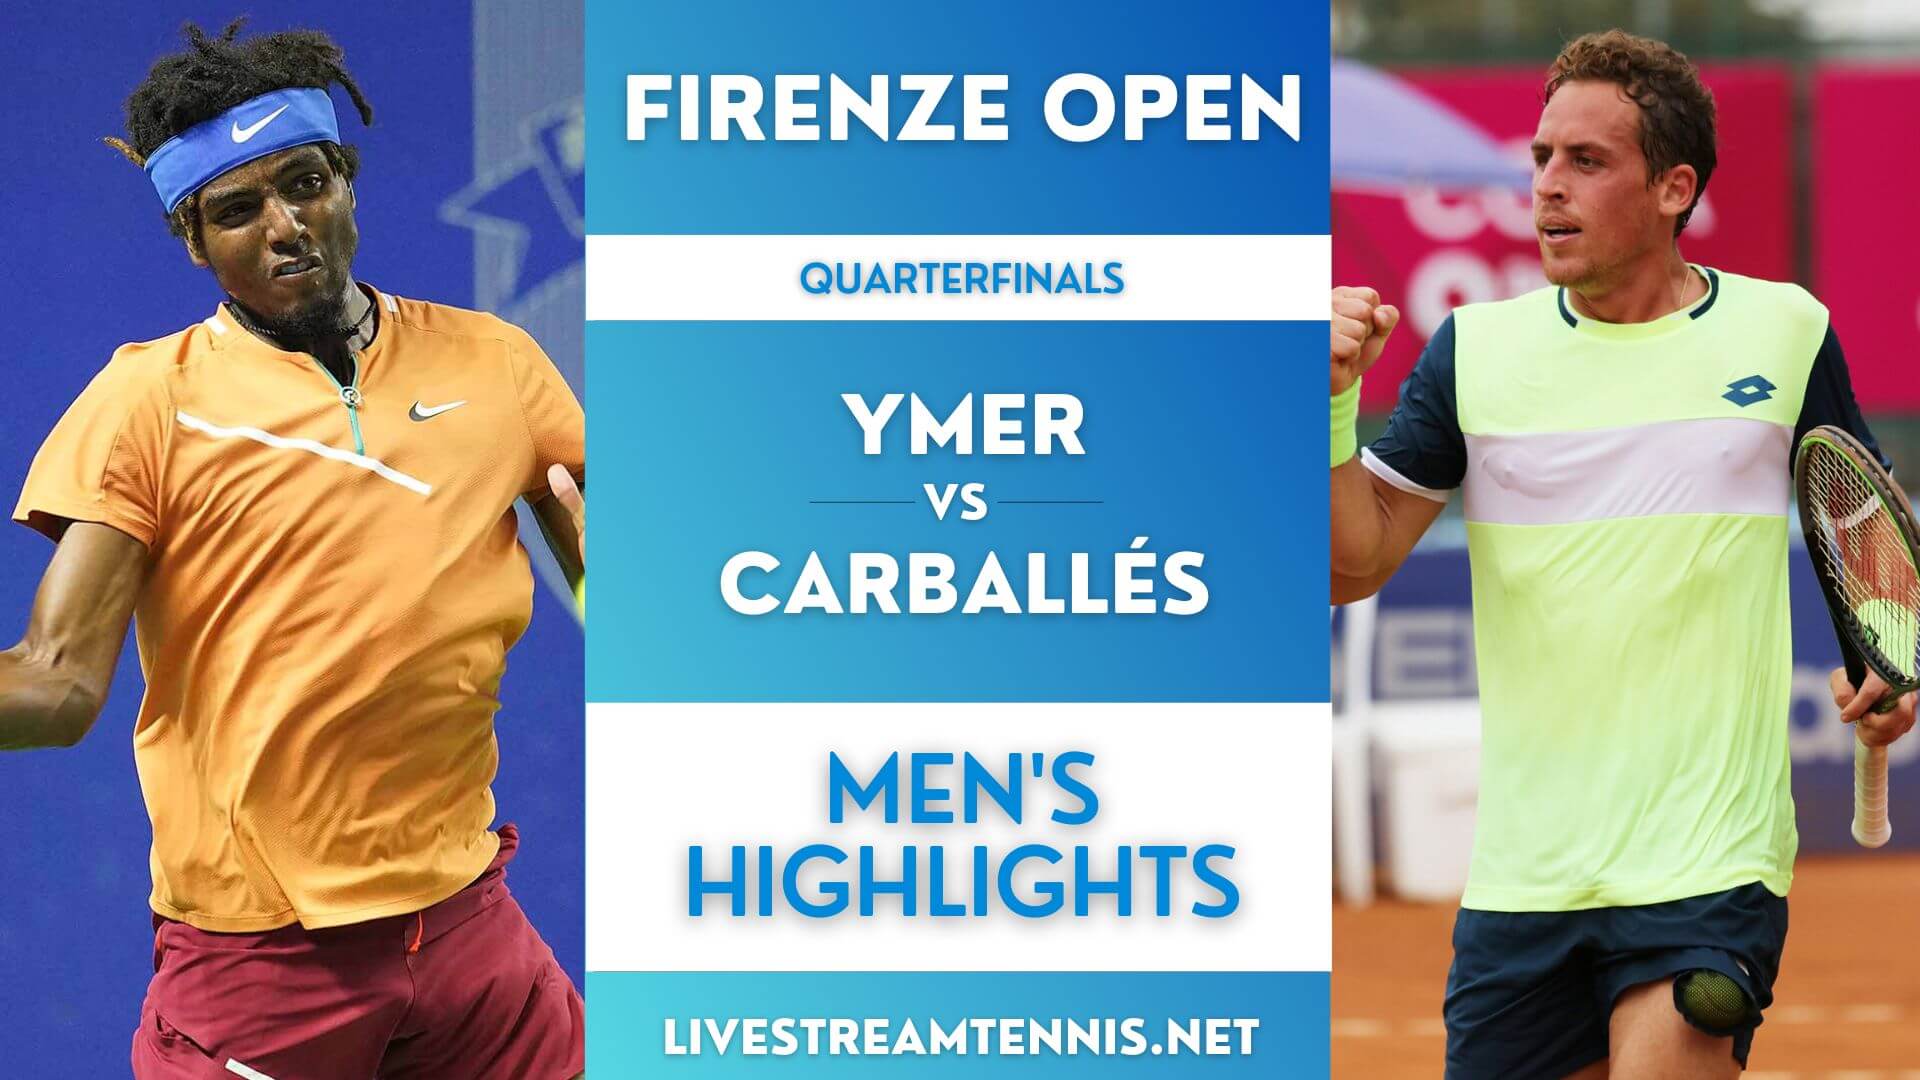 Firenze Open ATP Quarterfinal 3 Highlights 2022